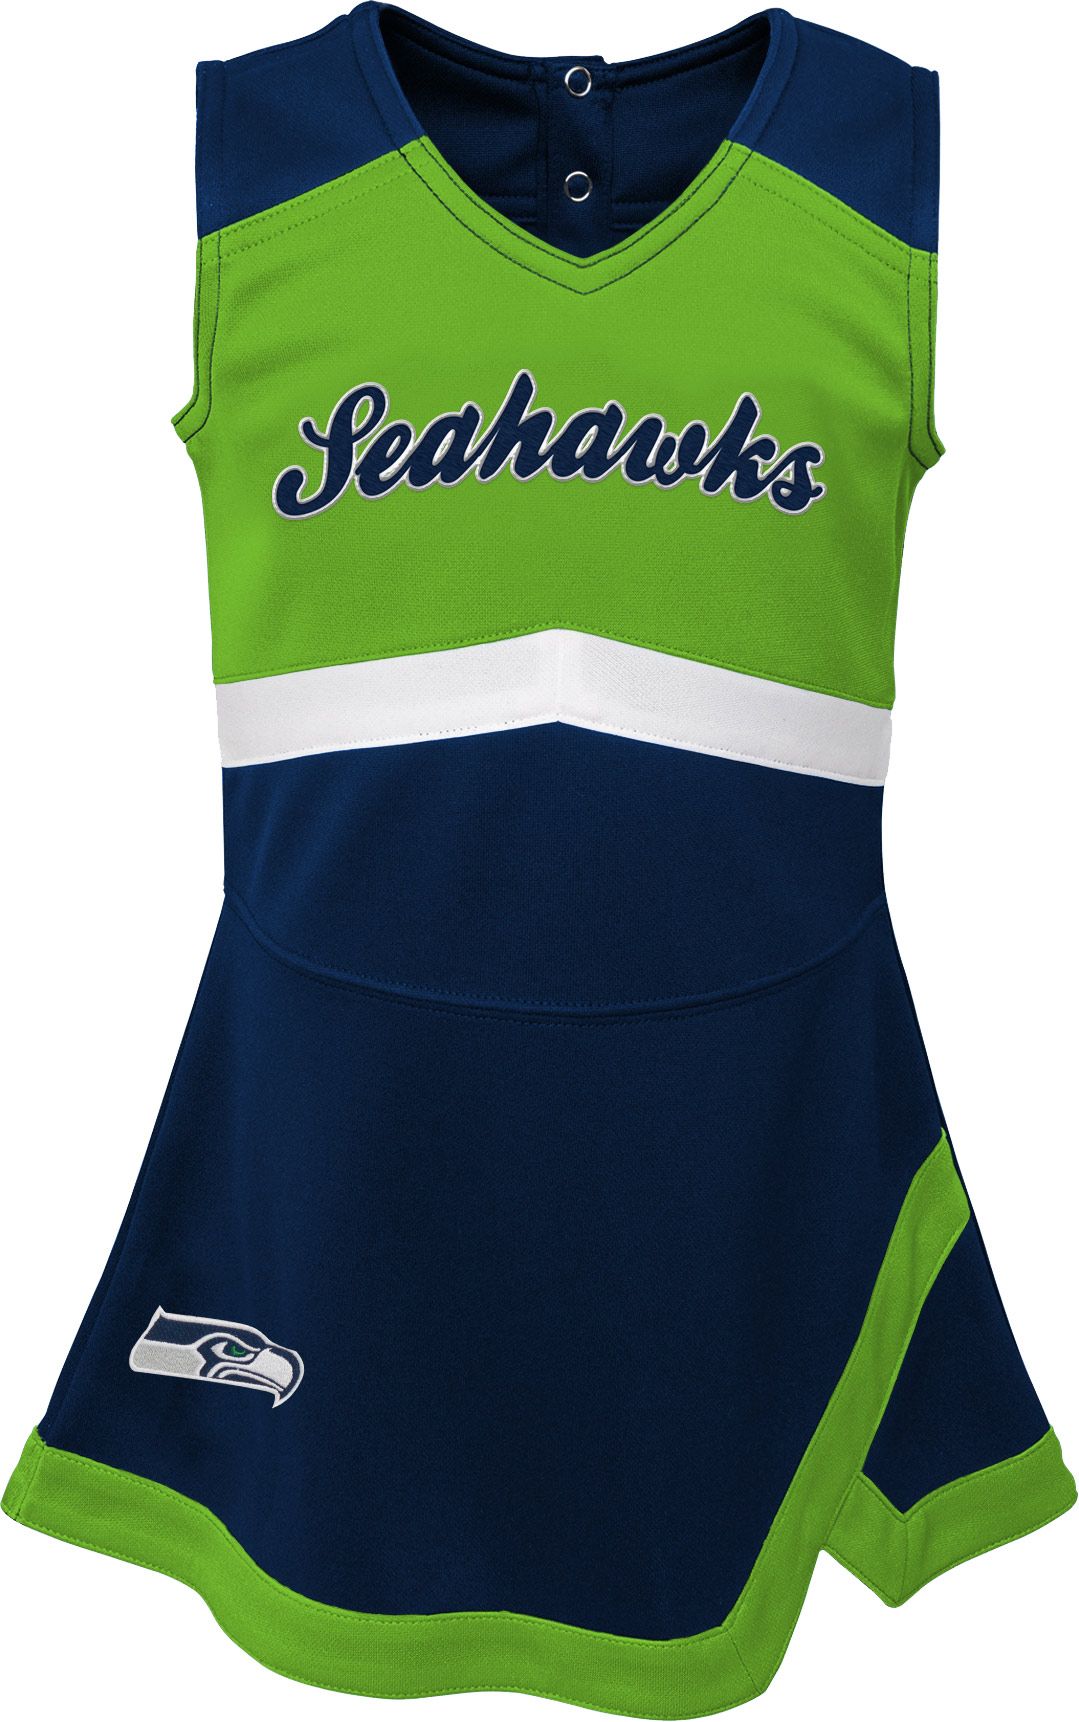 seahawks jersey dress